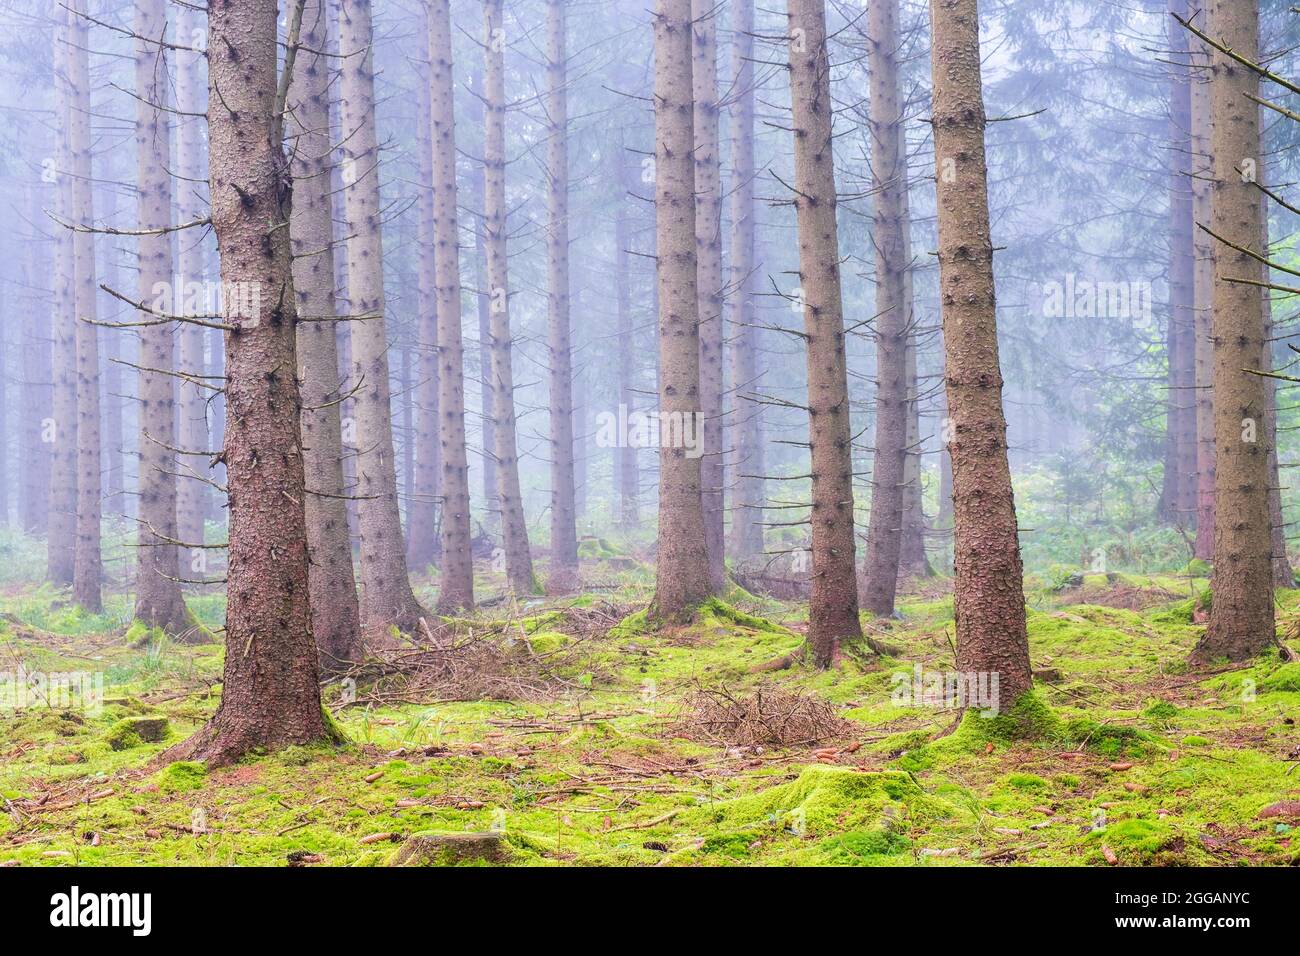 Bosque de abetos con musgo en el suelo del bosque y niebla Foto de stock